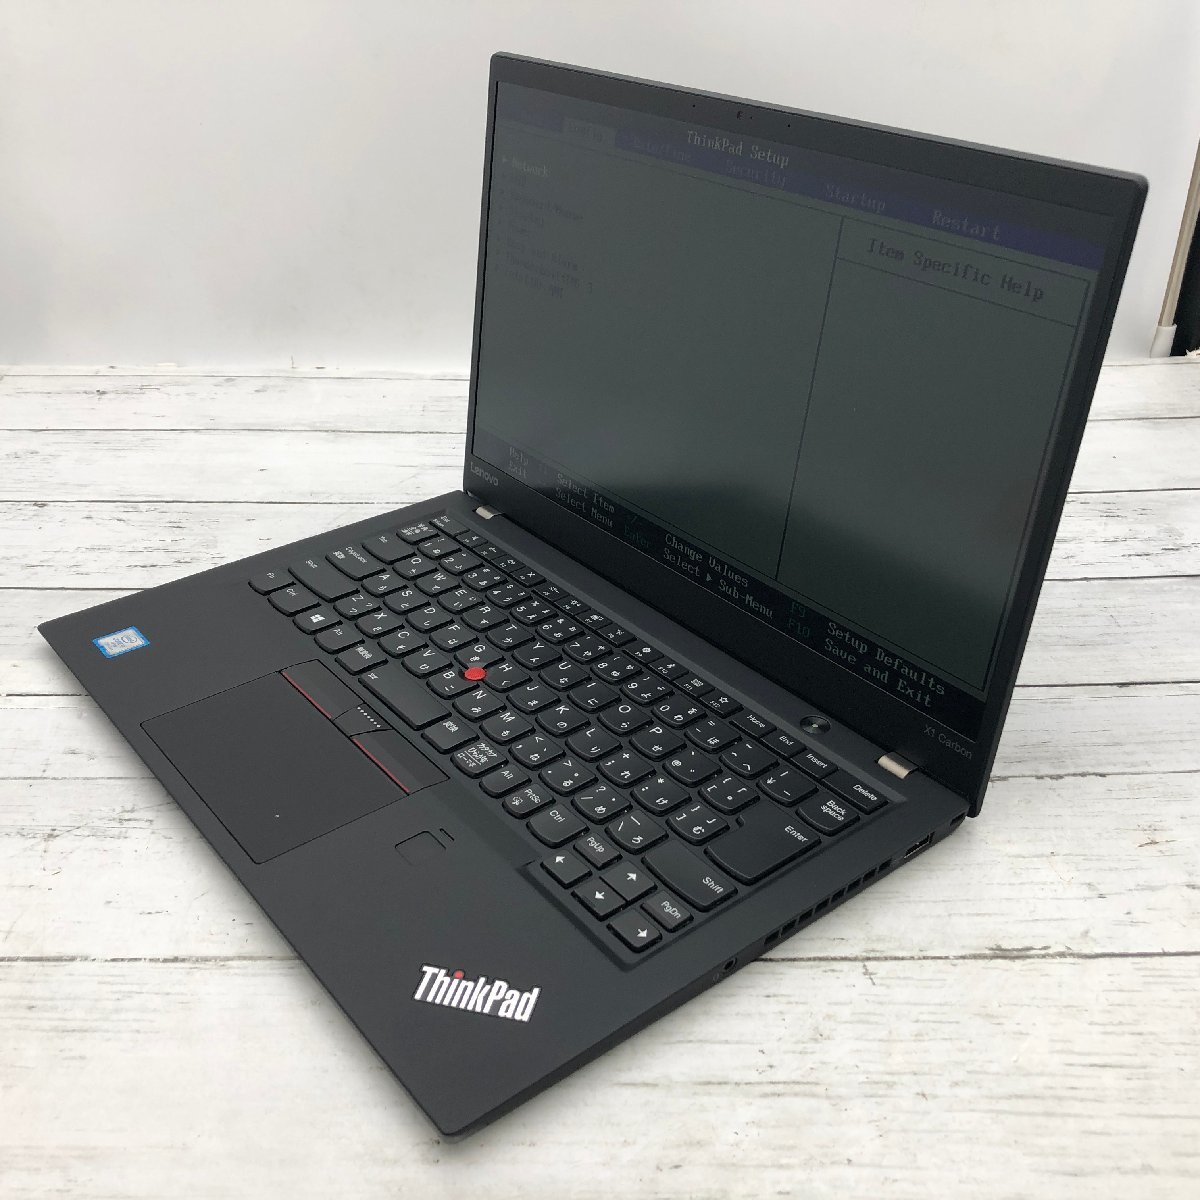 珍しい Core 20HQ-S0EG1D Carbon X1 ThinkPad Lenovo i7 〔A0425